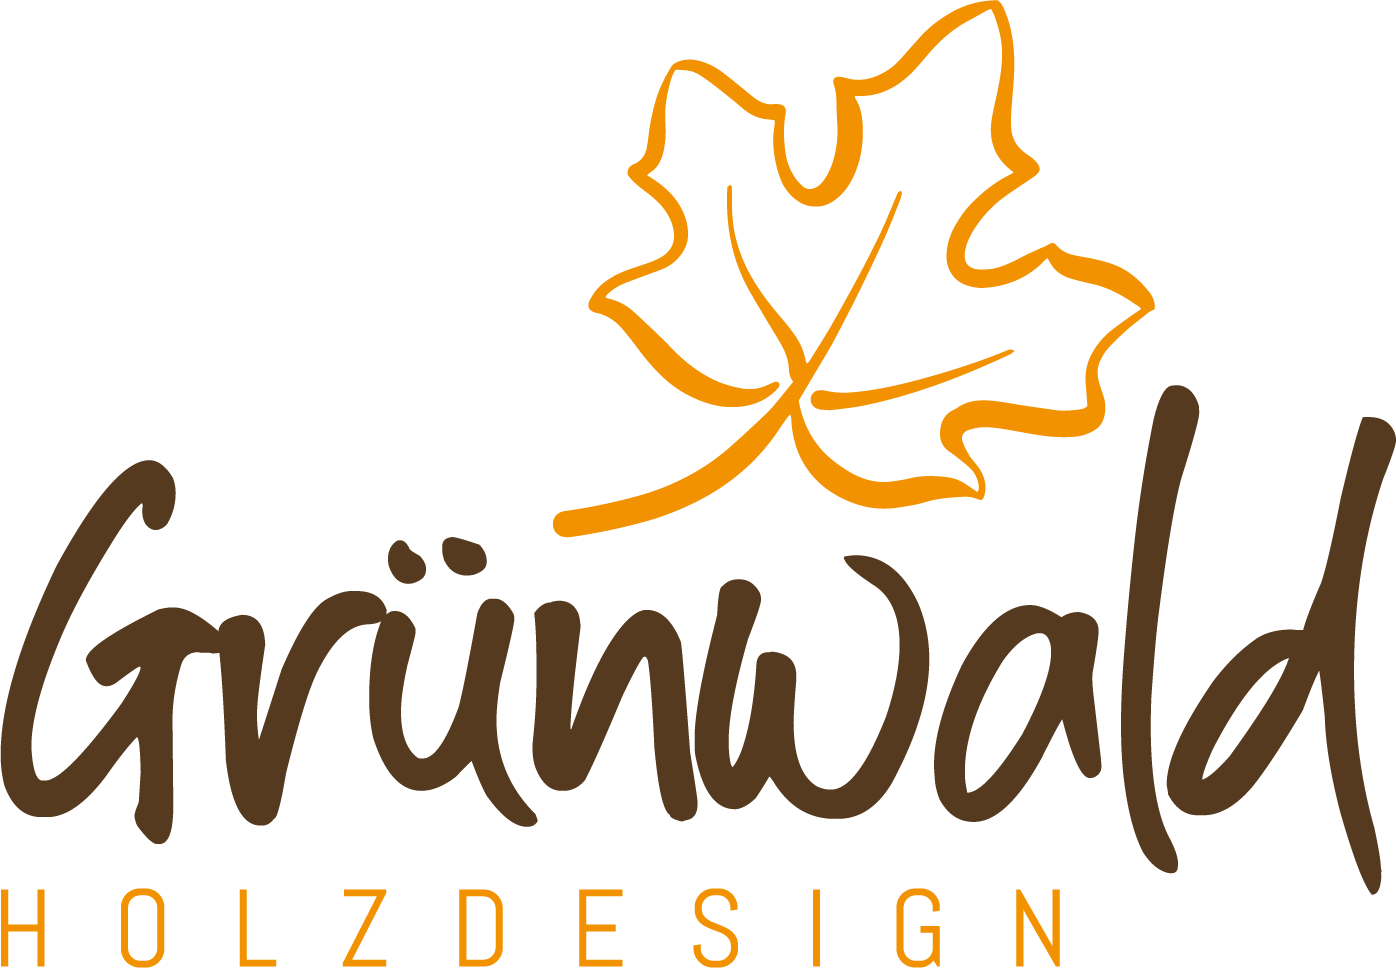 Holzdesign Grünwald